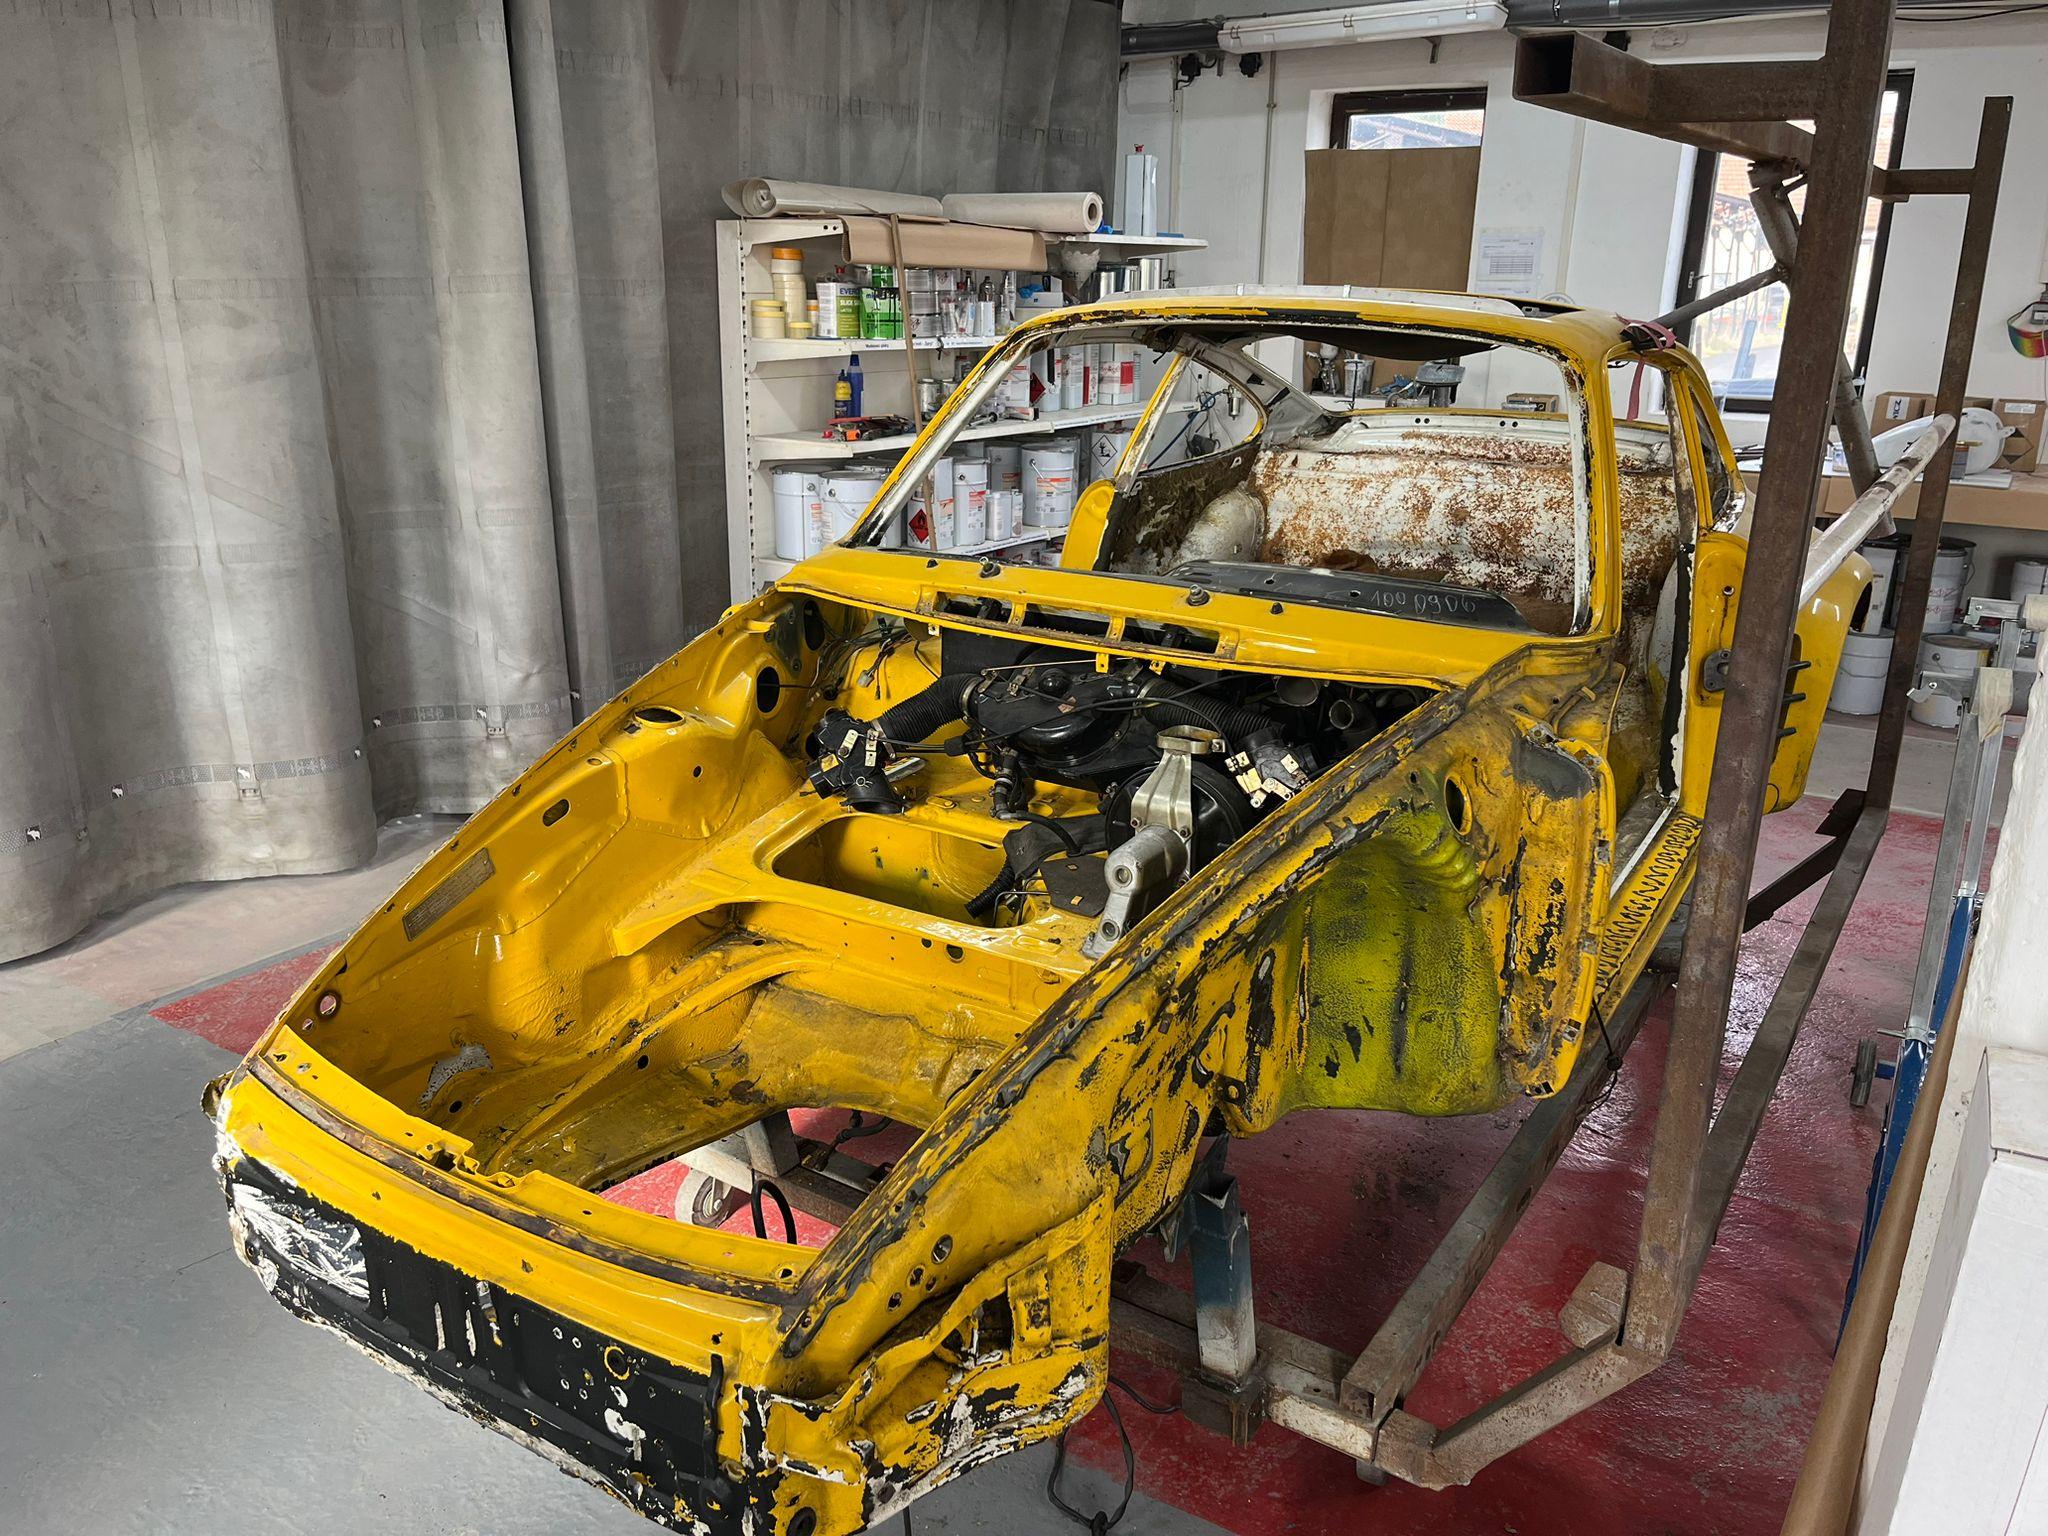 restauration restaurierung porsche 911 turbo g karosserie